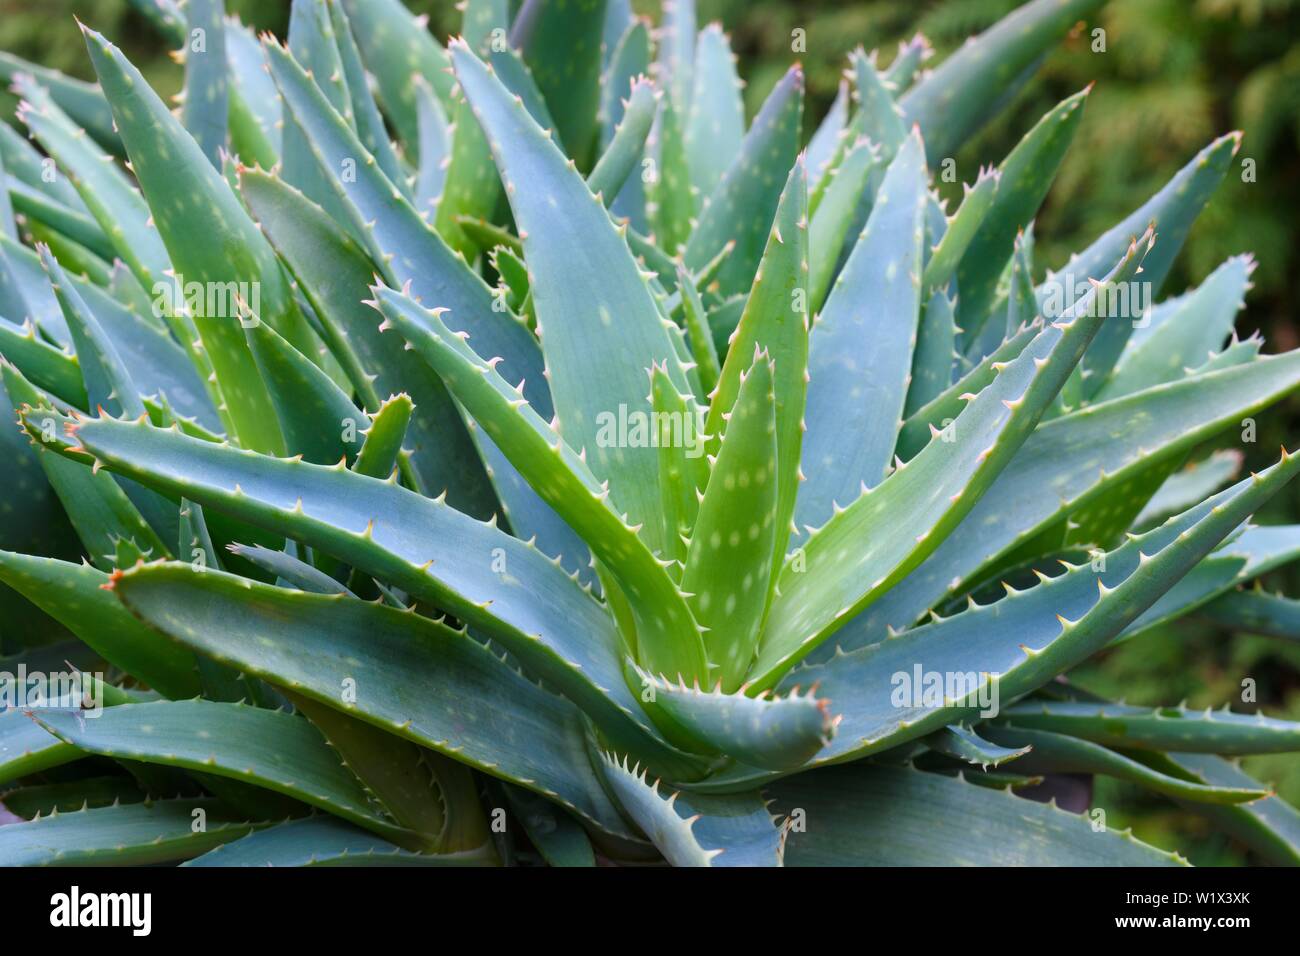 Aloe vera (Aloe vera), detail, Germany Stock Photo - Alamy